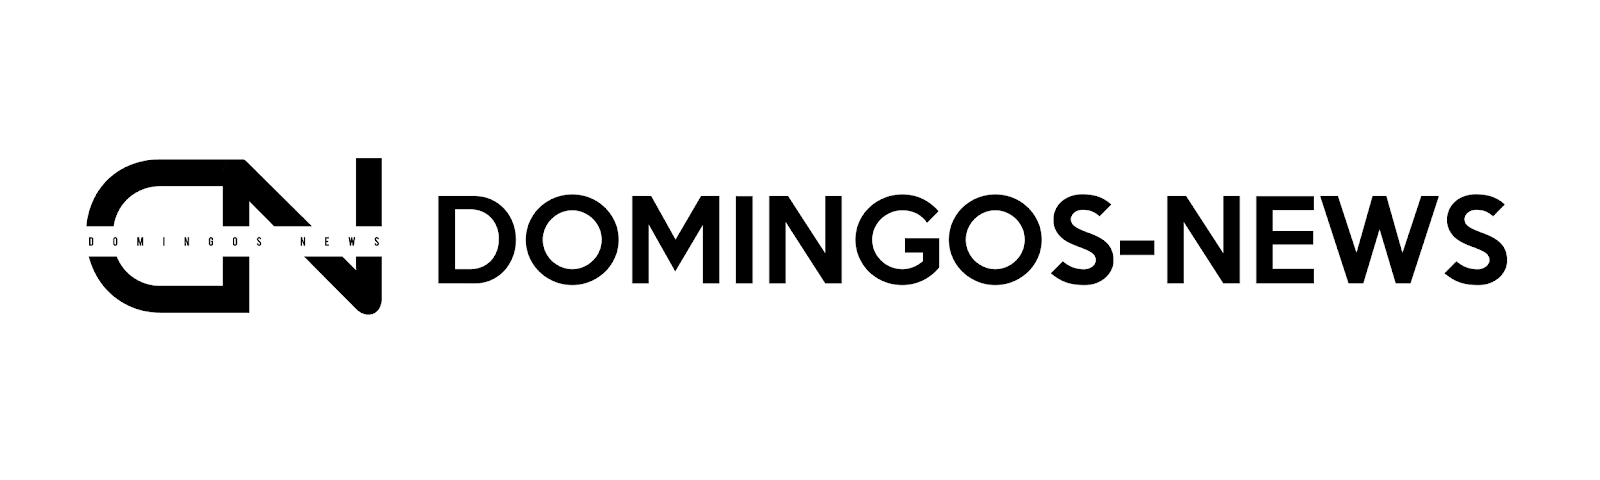 Domingos-news